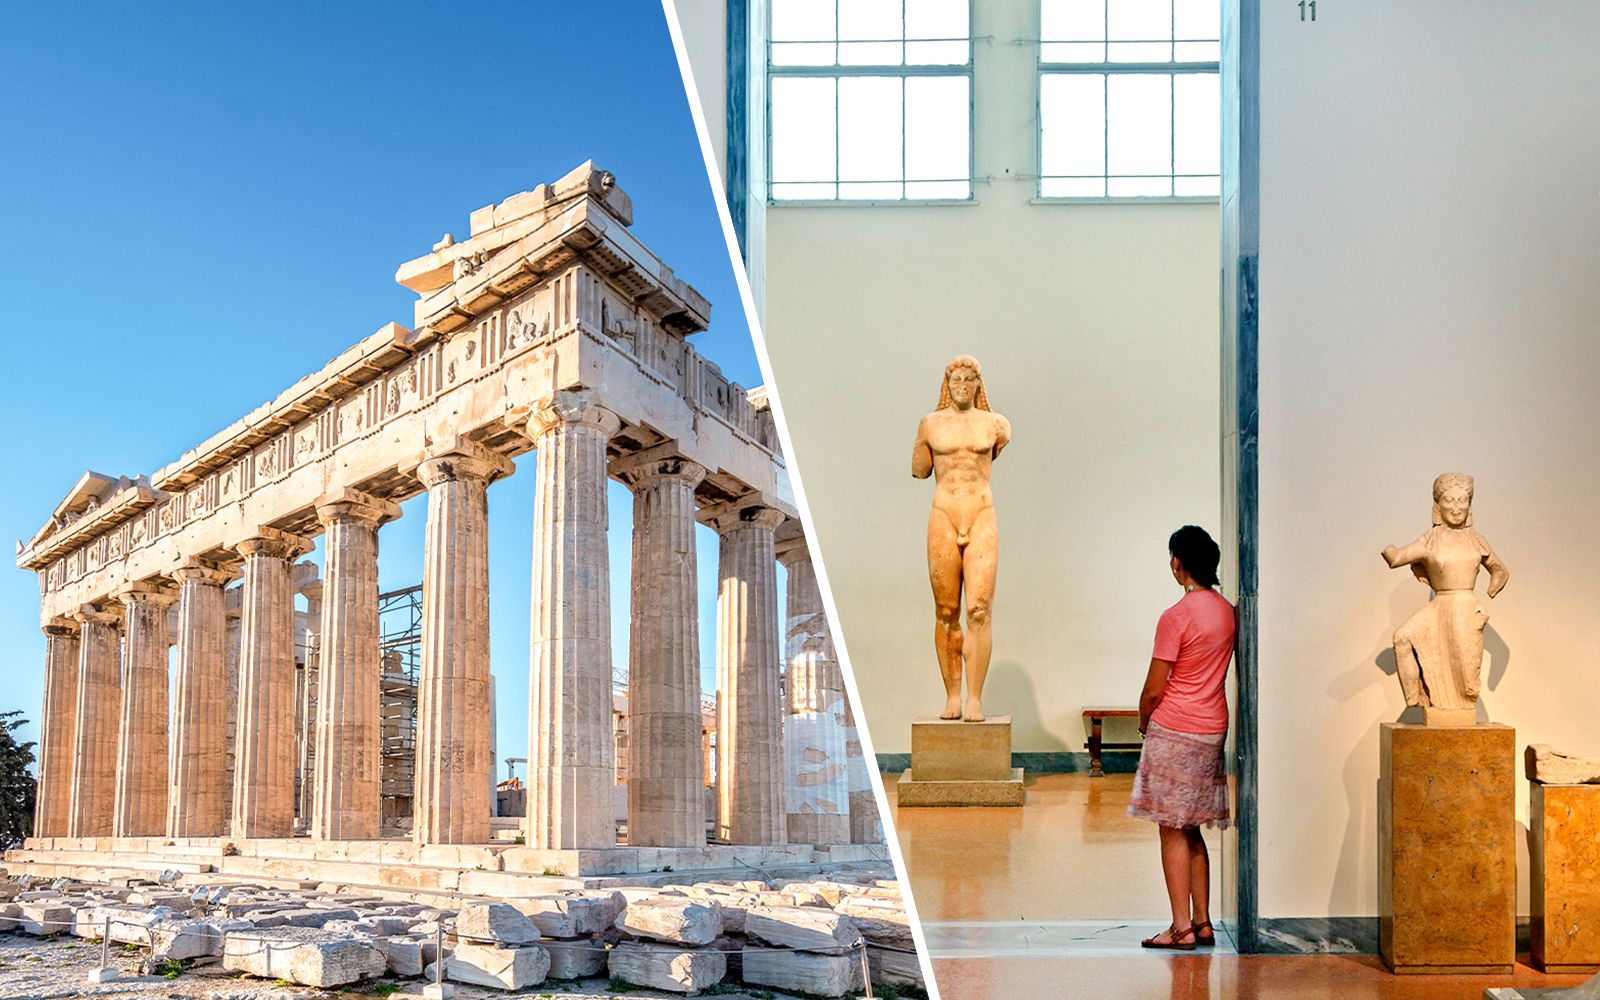 Imagen del tour: Combo: entradas multipase para la Acrópolis y 6 yacimientos arqueológicos + entrada al Museo Arqueológico Nacional de Atenas con audioguía opcional